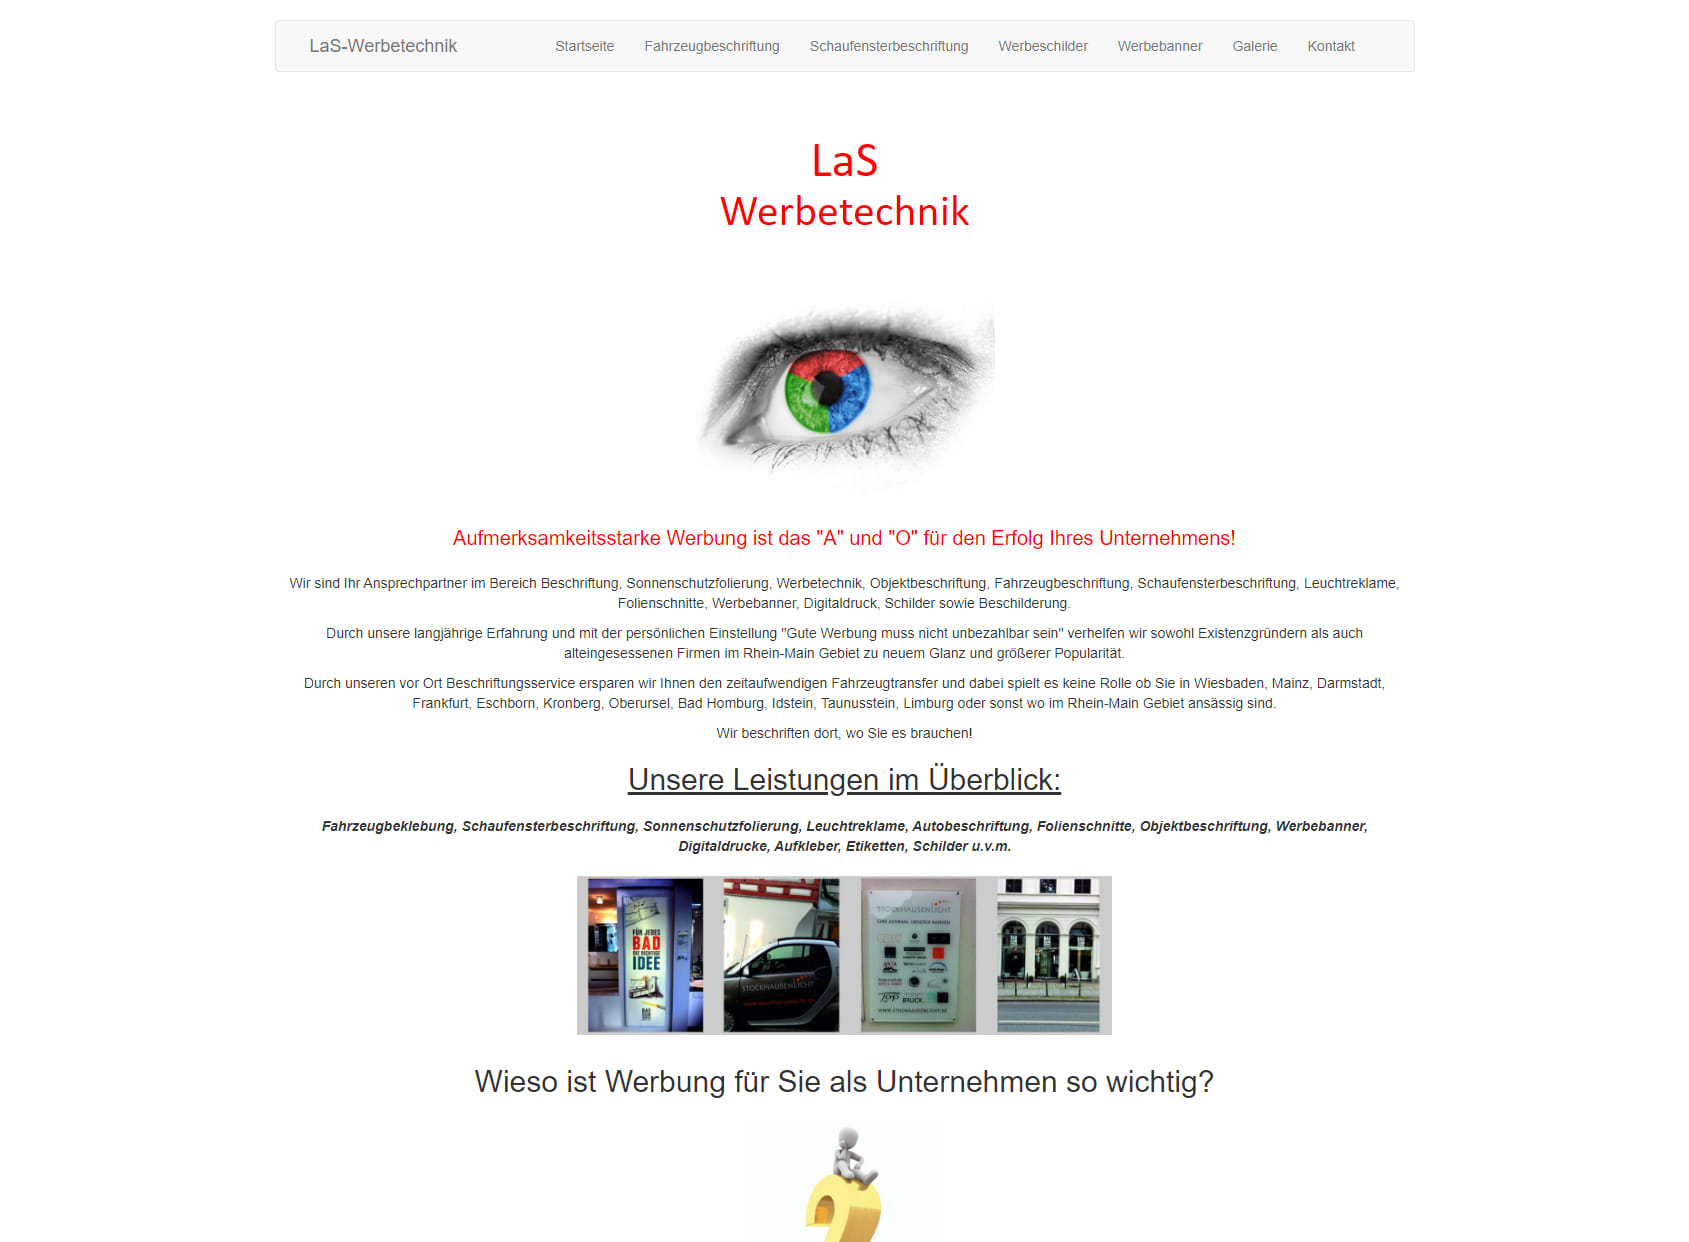 LaS - Werbetechnik Fahrzeugbeschriftung - Schaufensterbeschriftung - Schilder - Sonnenschutzfolierung - Druck u.v.m